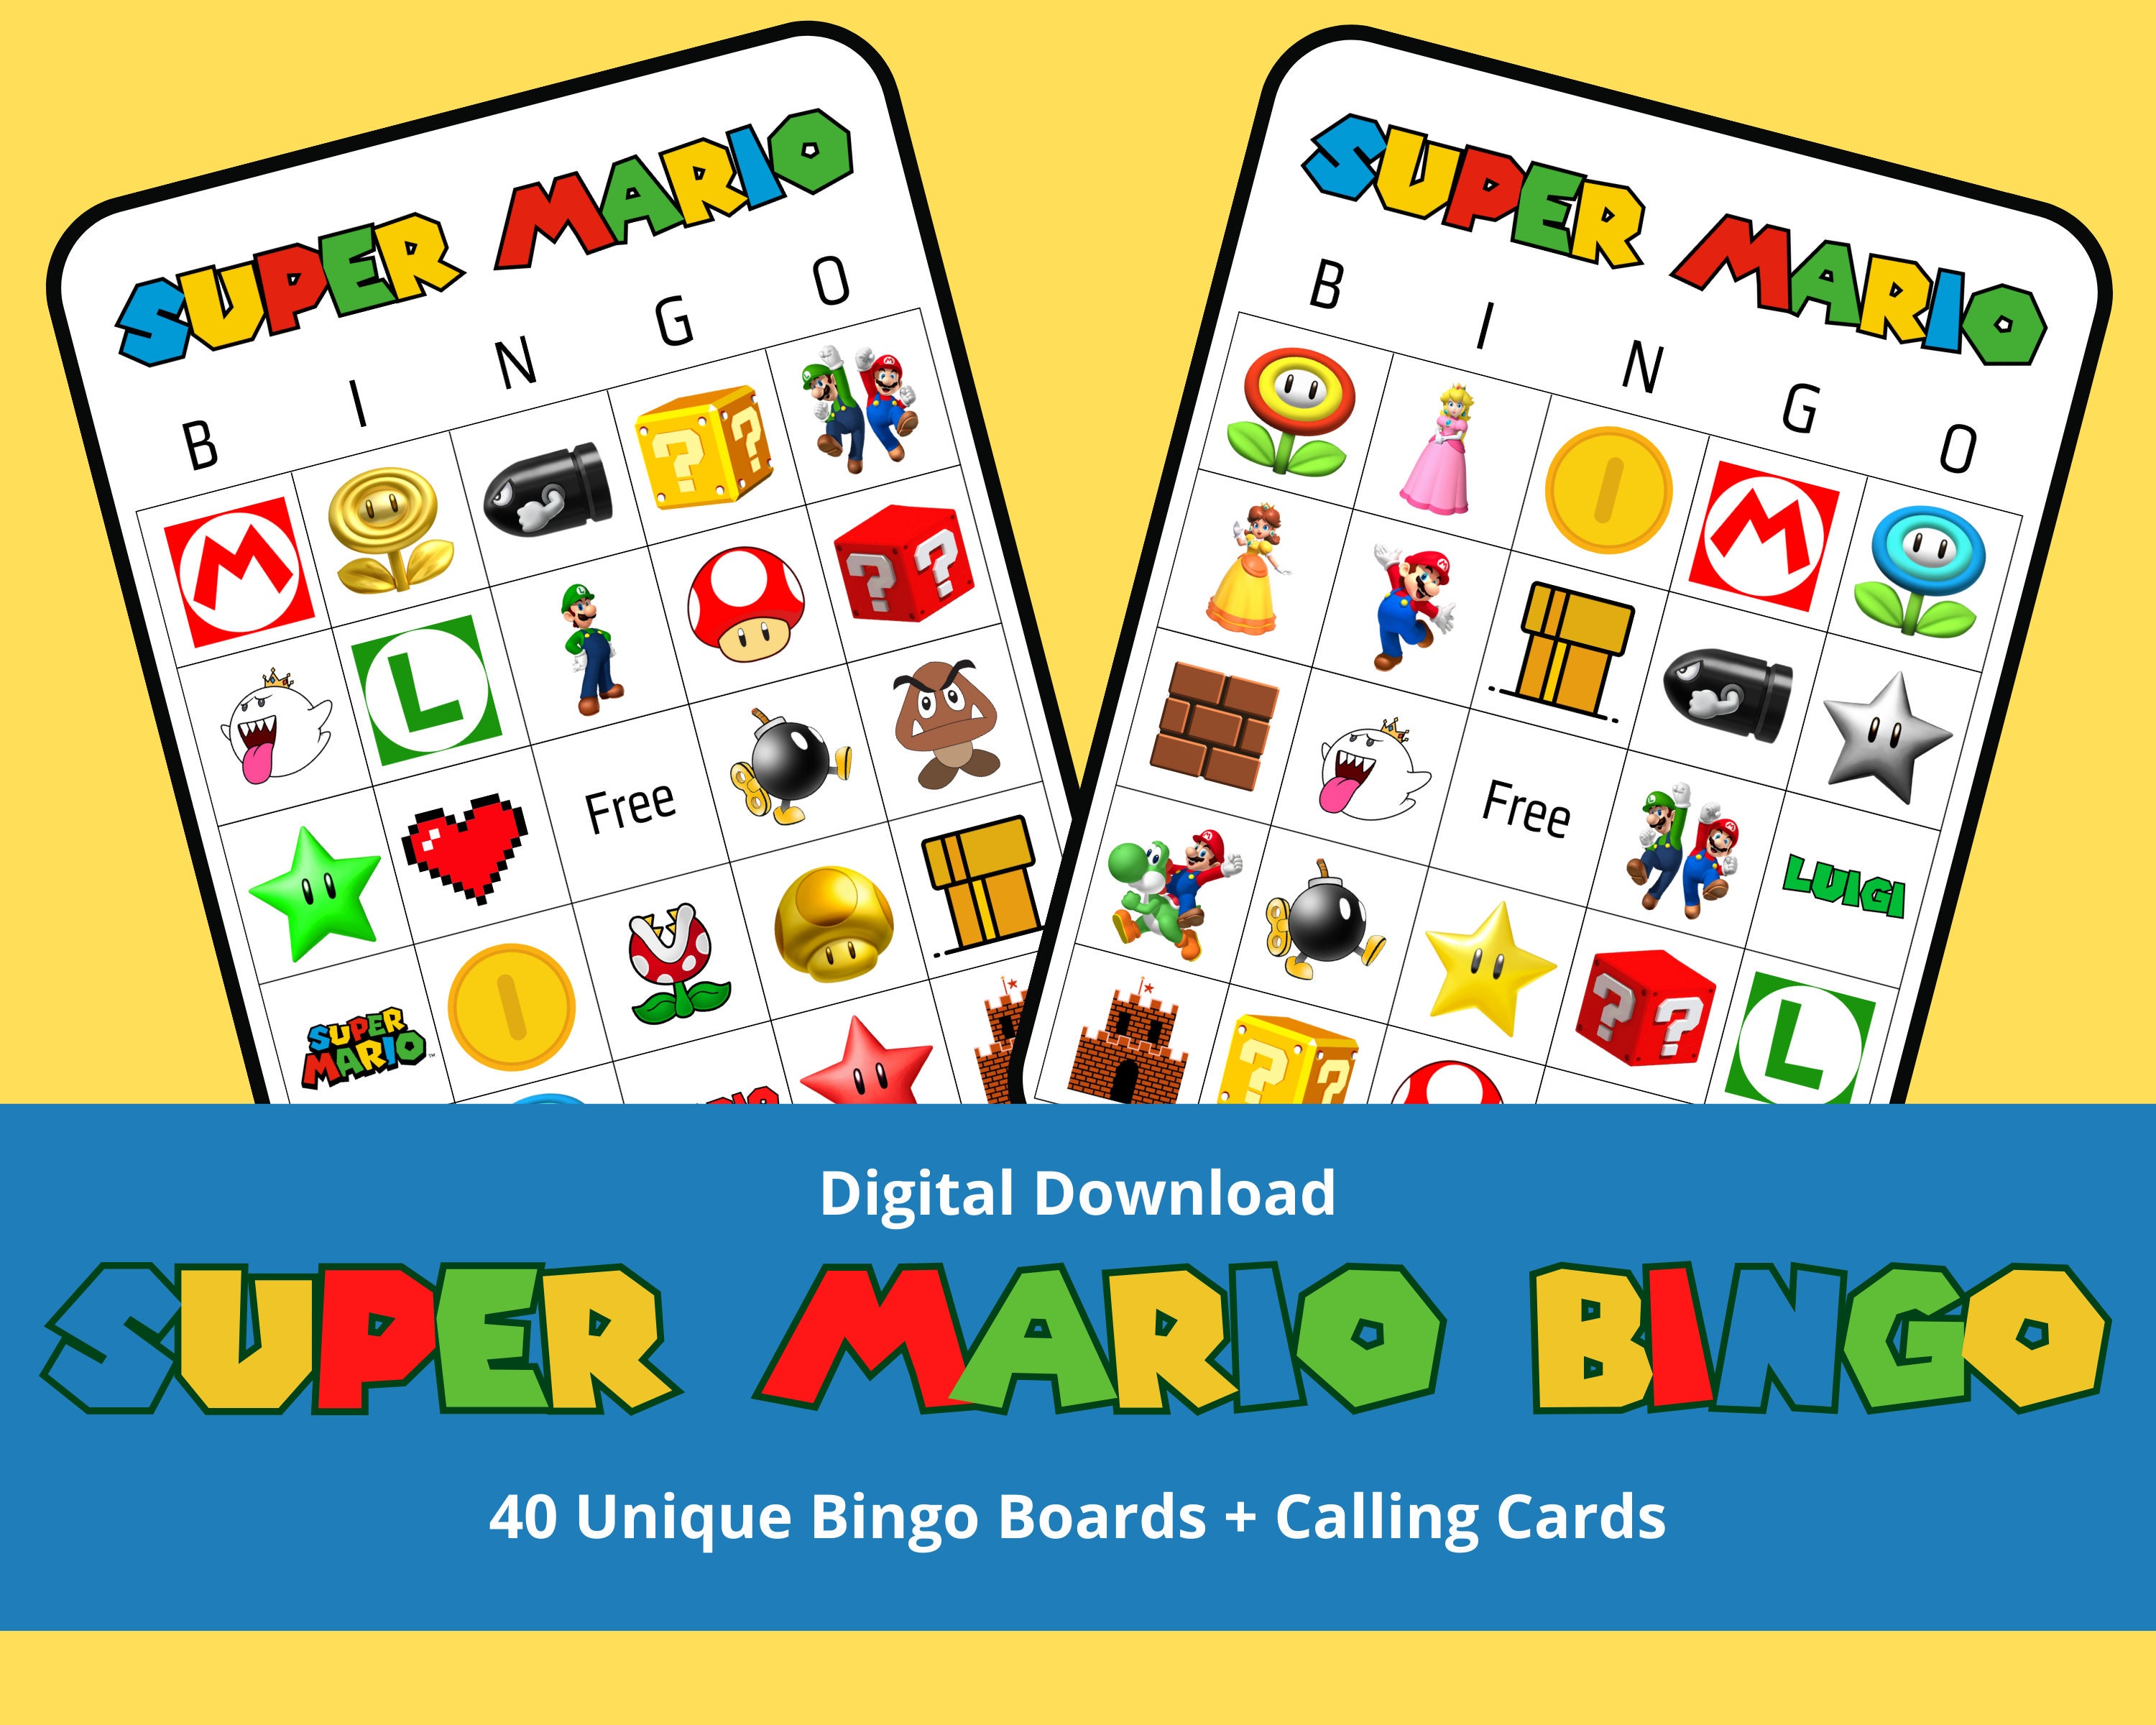 Super Mario Bingo 40 Unique Bingo Cards 2 Kinds of Calling Cards - Etsy ...